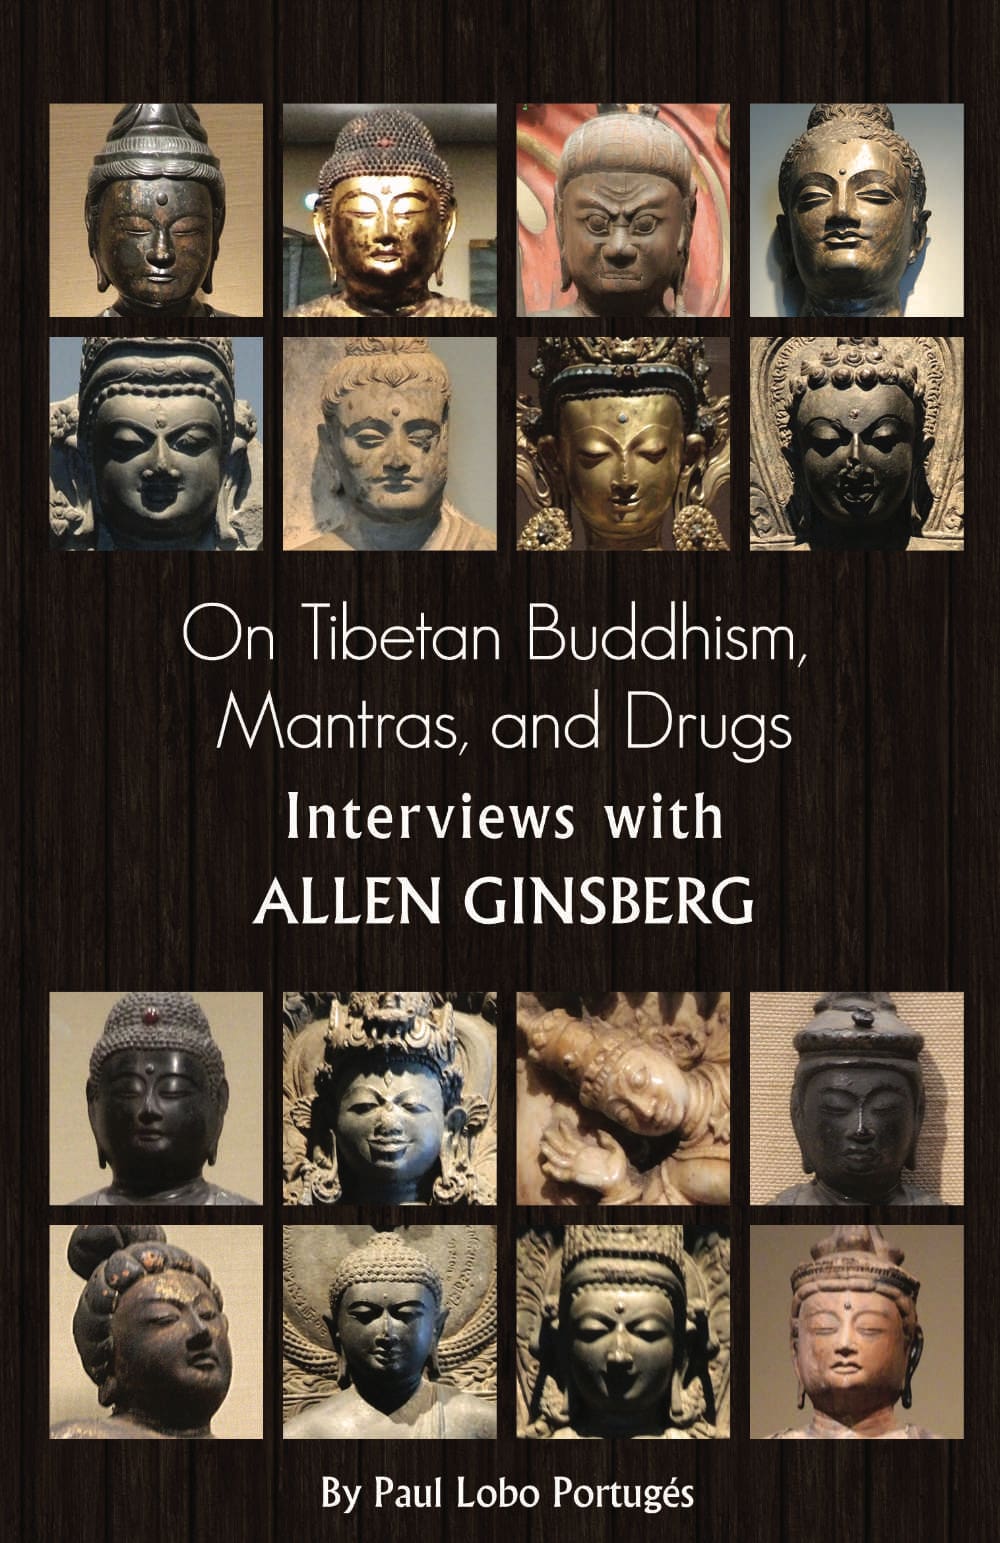 Interviews with Allen Ginsberg